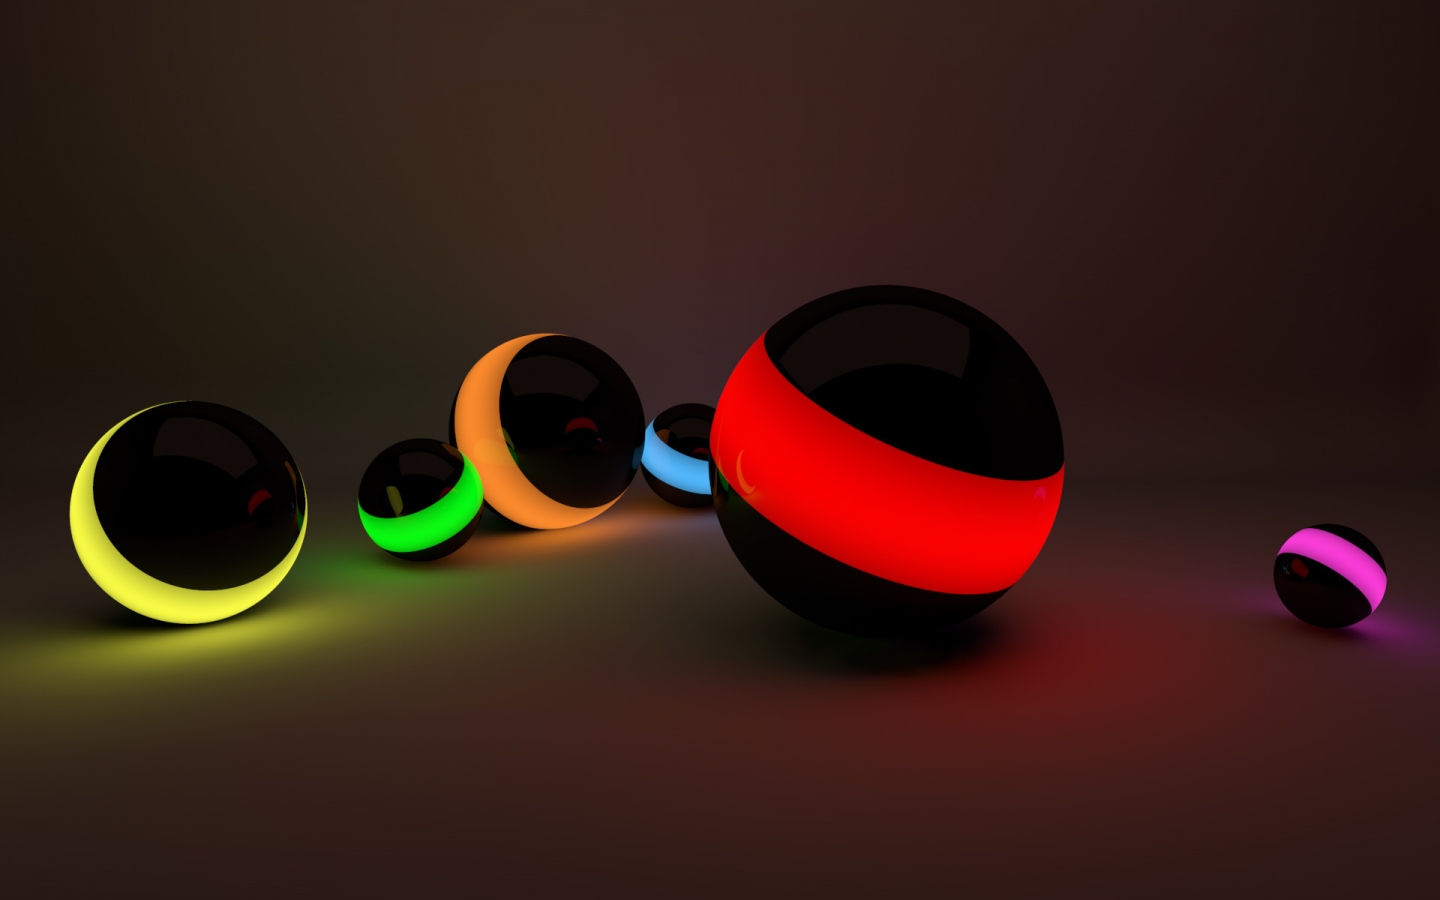 Balls Lights for 1440 x 900 widescreen resolution